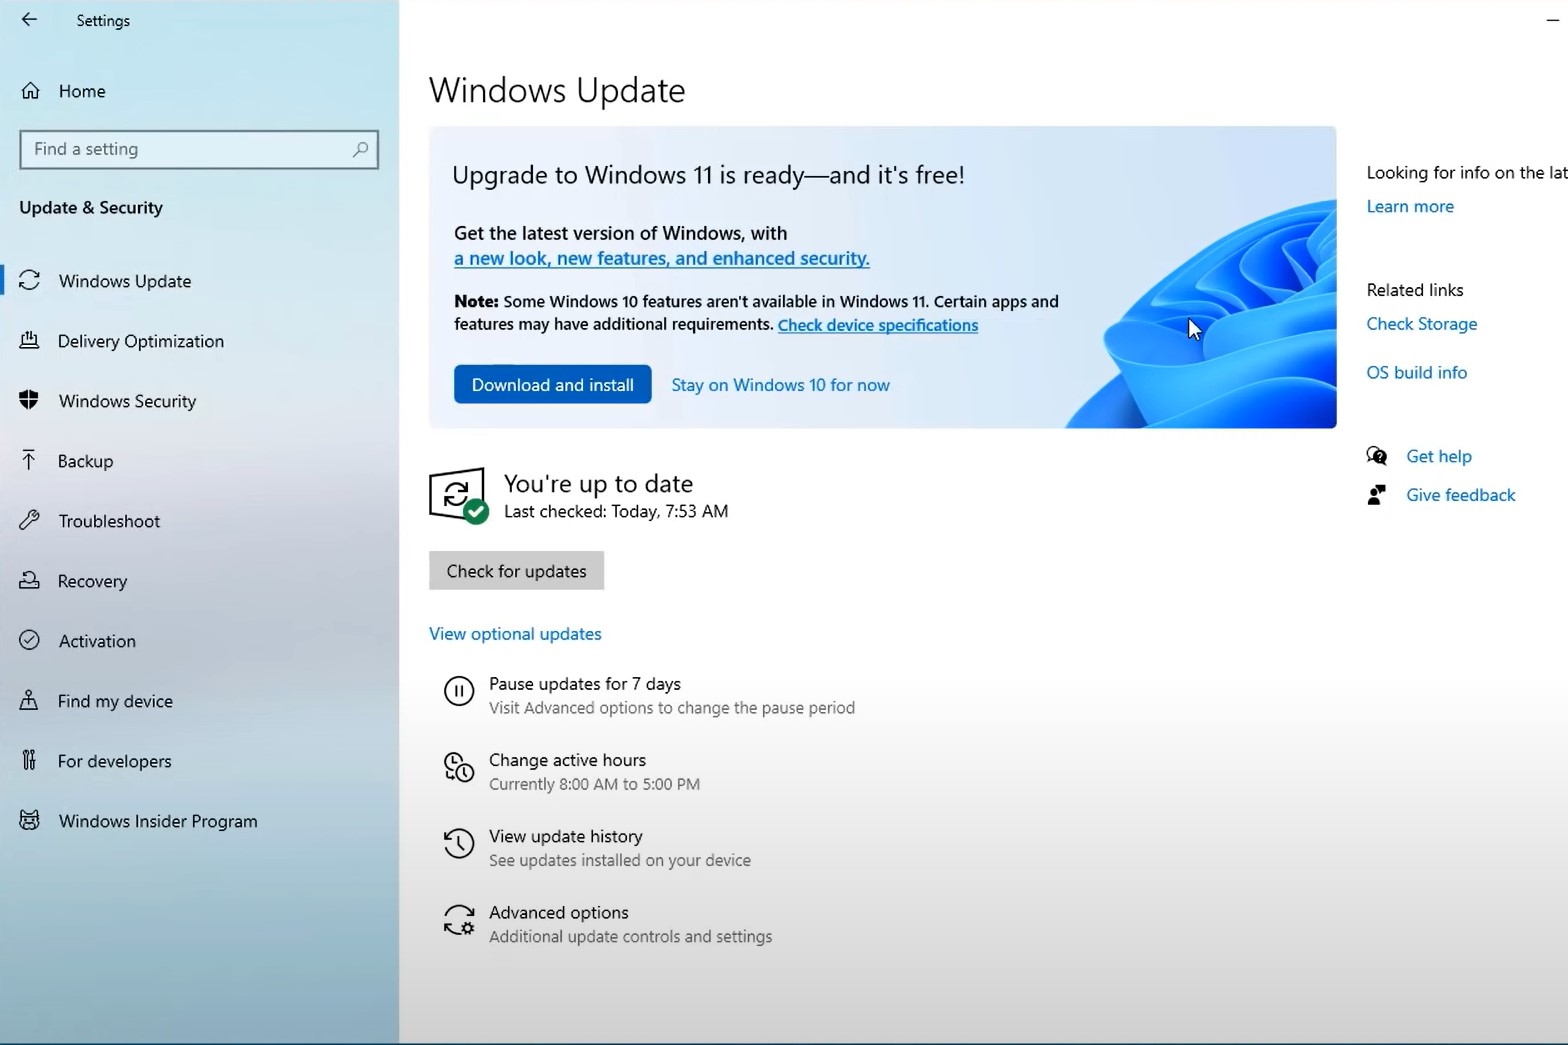 Windows 10's Security Menu